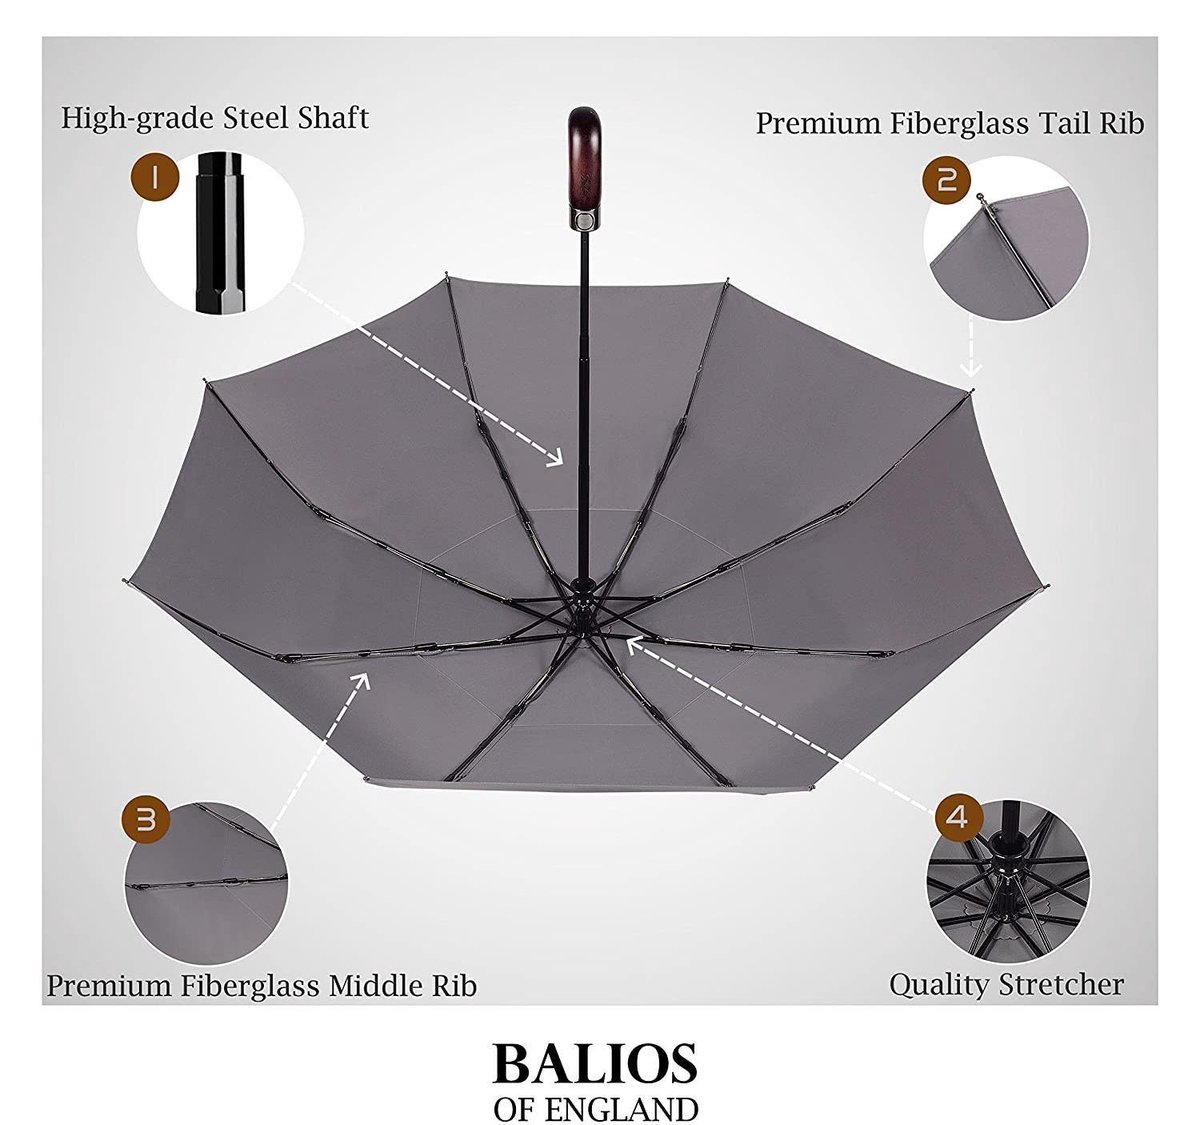 Parapluie Blunt, anti tempête résistant au vent, modèle classique